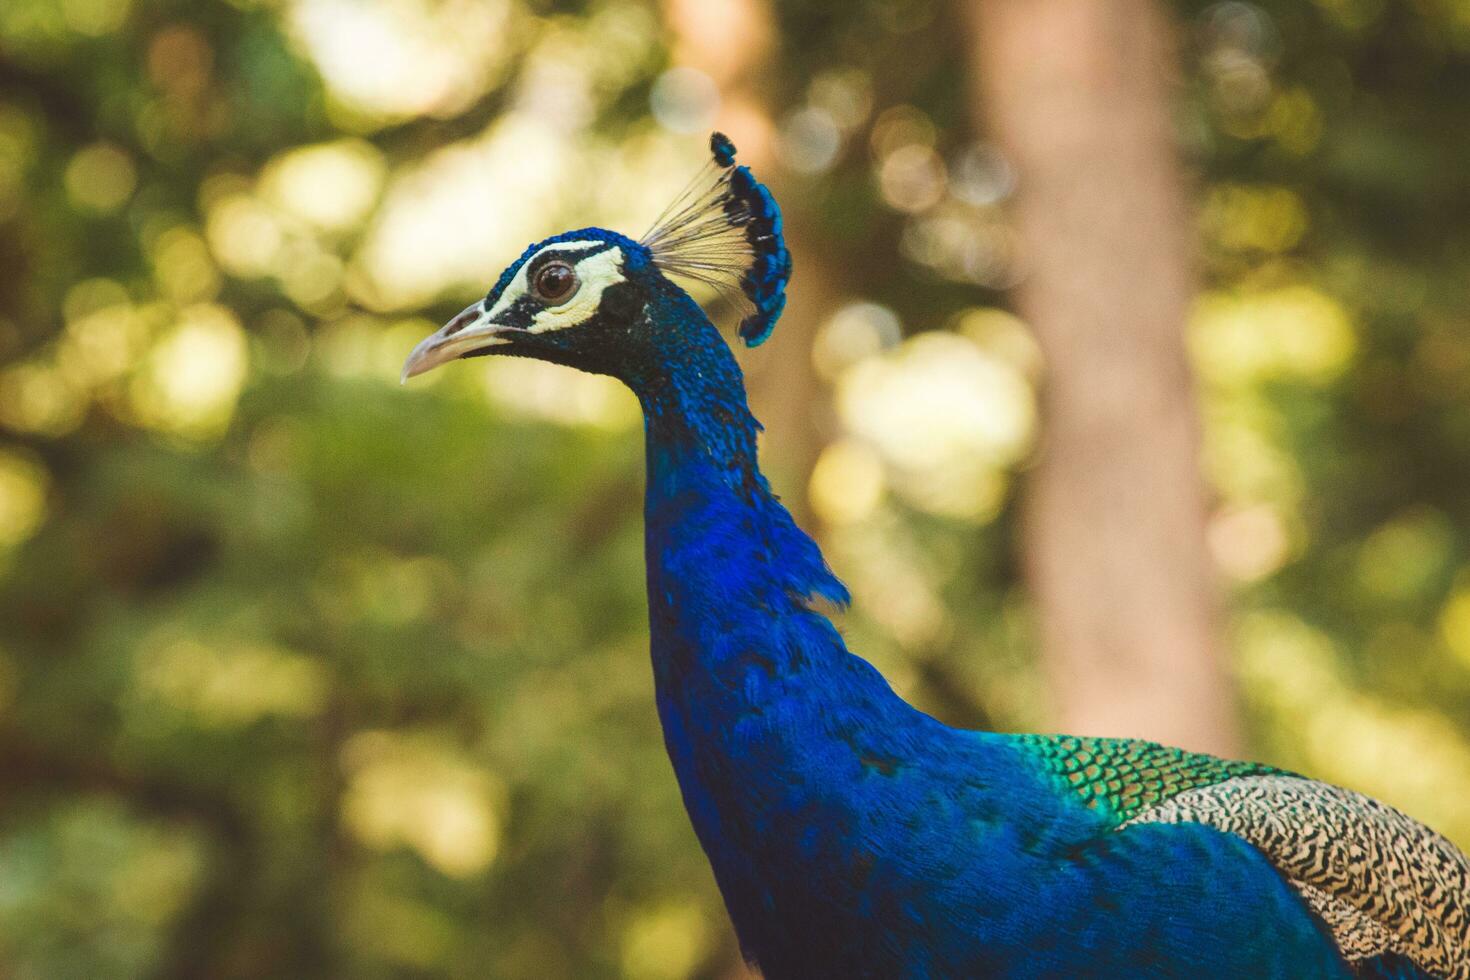 blue peacock bird photo